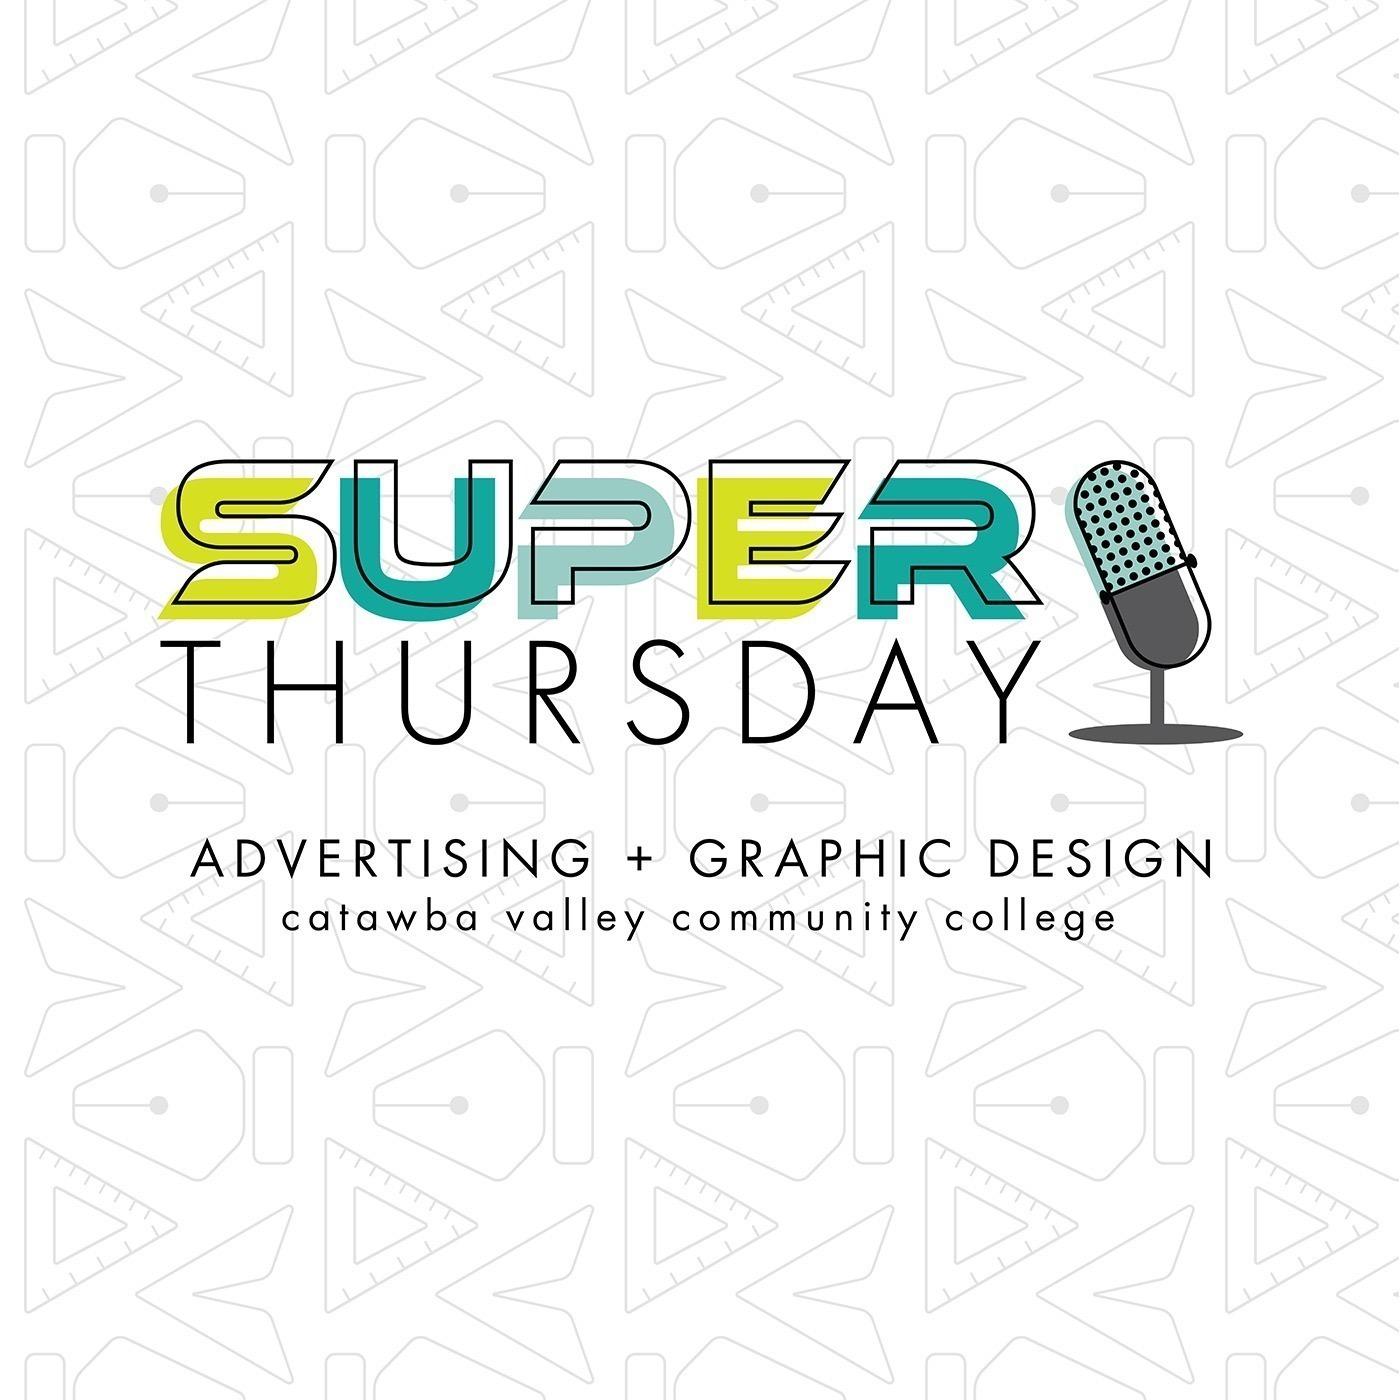 Super Thursday | CVCC AGD